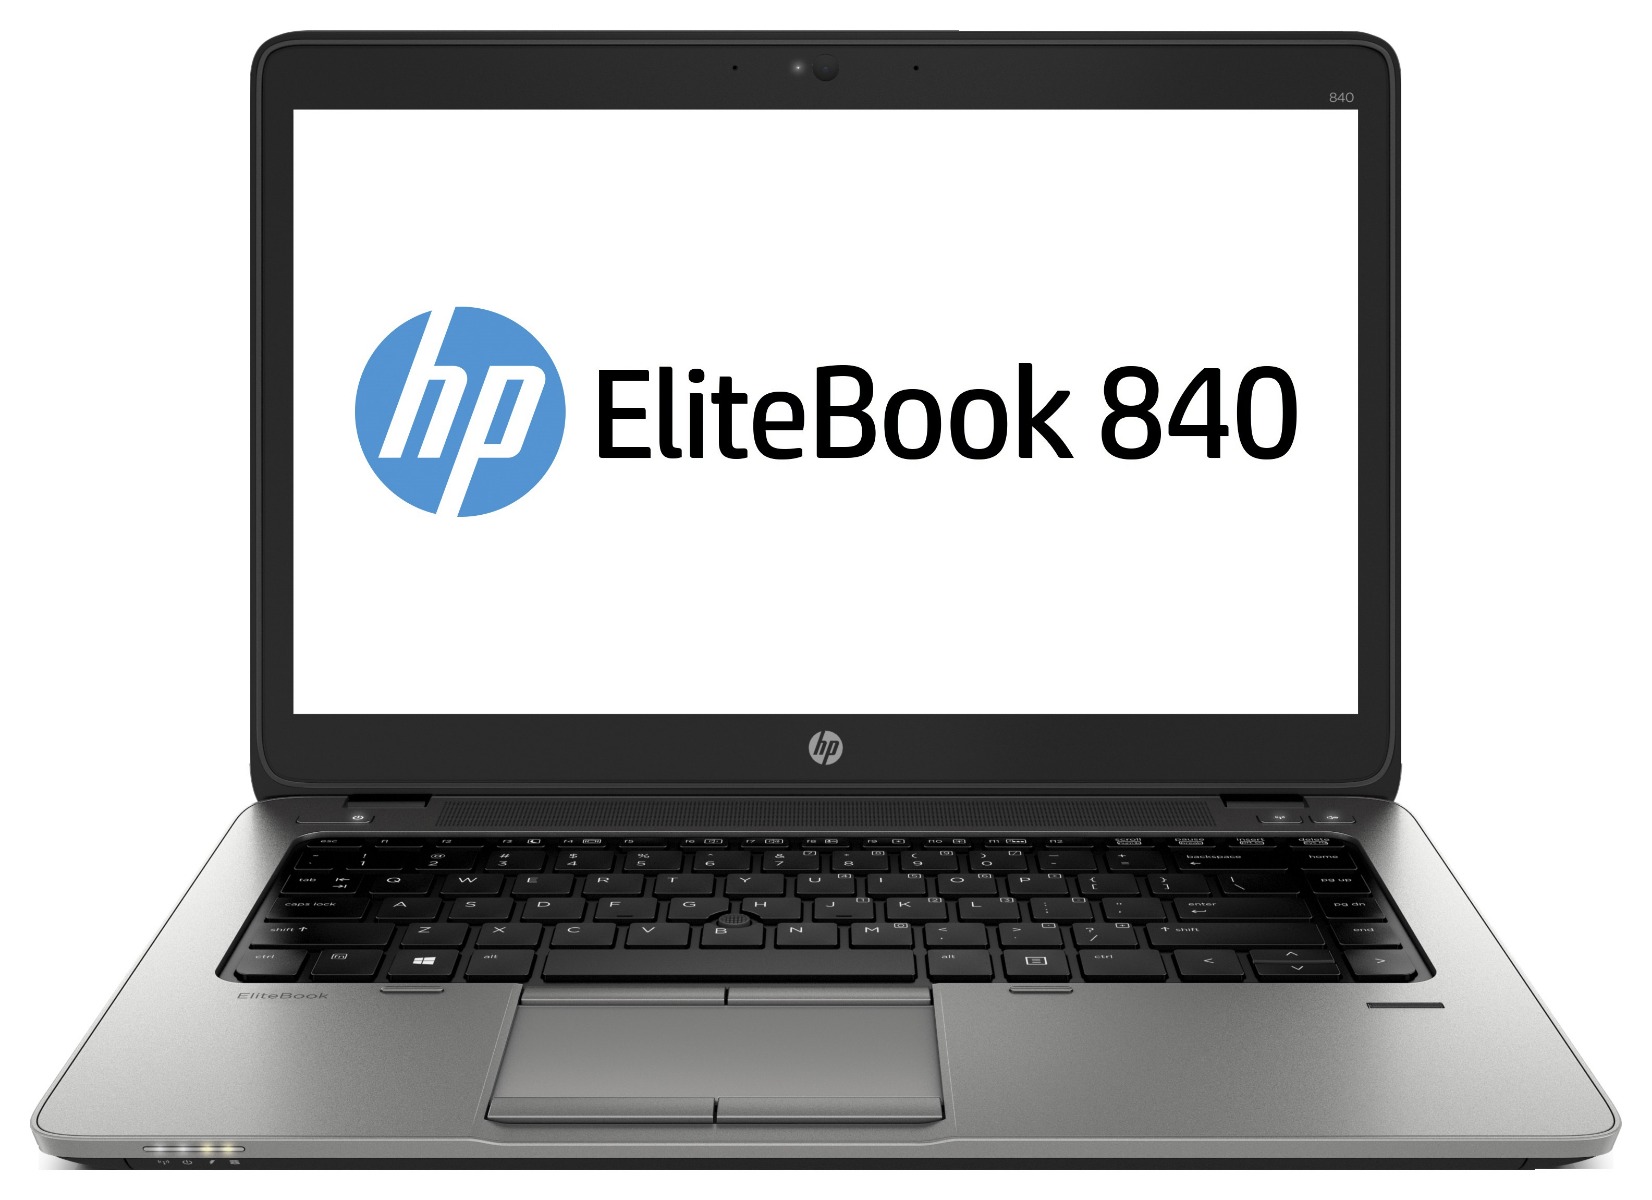 Refurbished laptop HP EliteBook 840 met gratis cursus + extra's